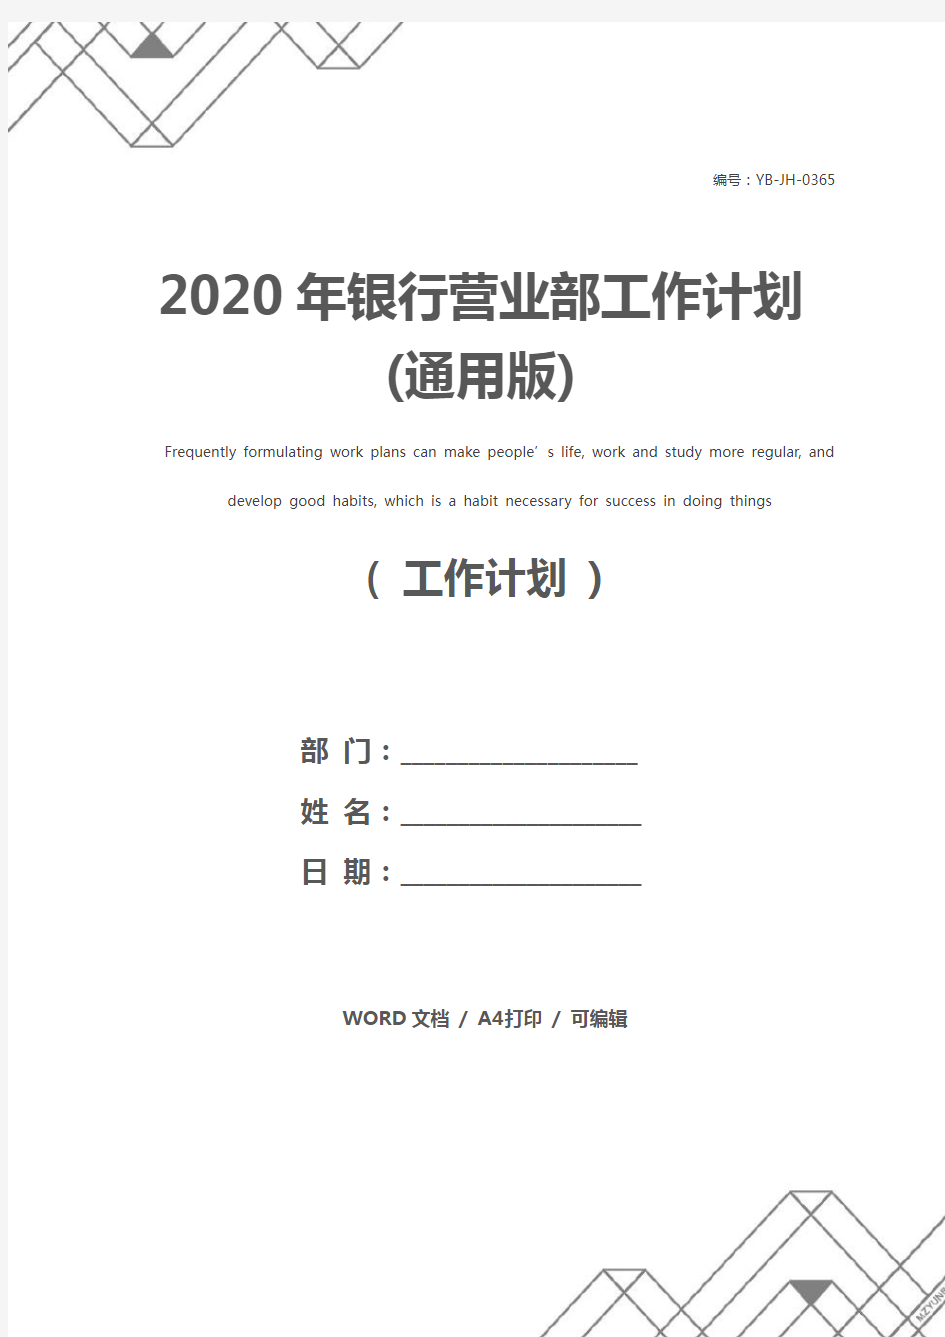 2020年银行营业部工作计划(通用版)